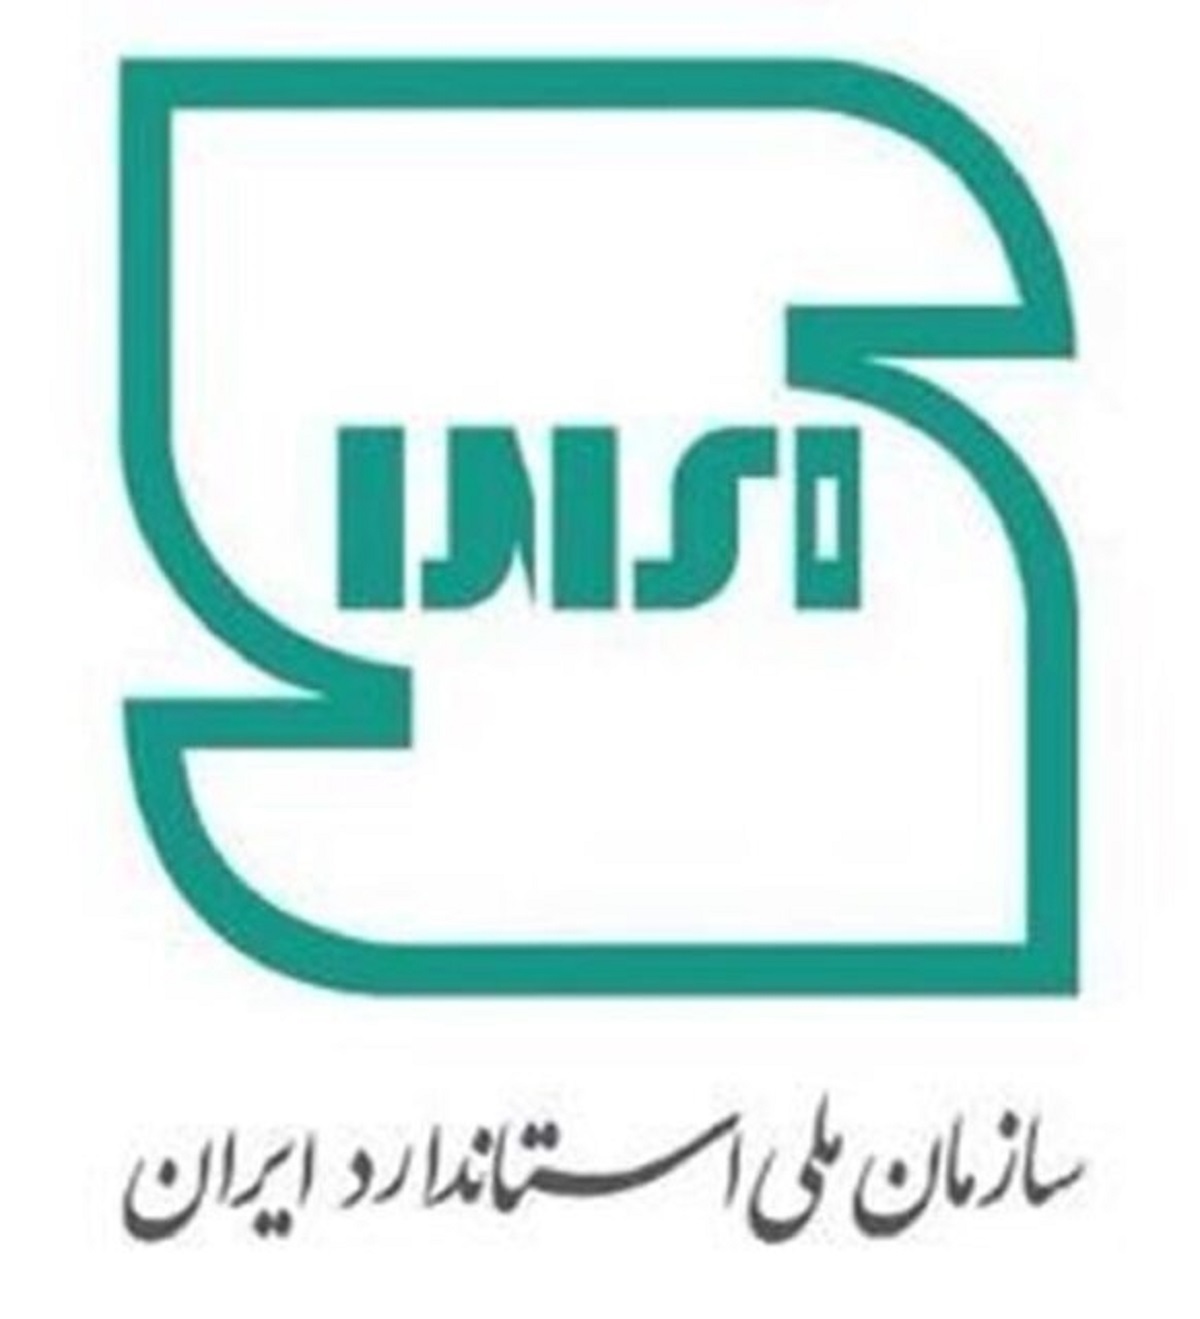 چرا آرم استاندارد ایران تغییر کرد؟/ سازمان ملی استاندارد ایران پاسخ داد